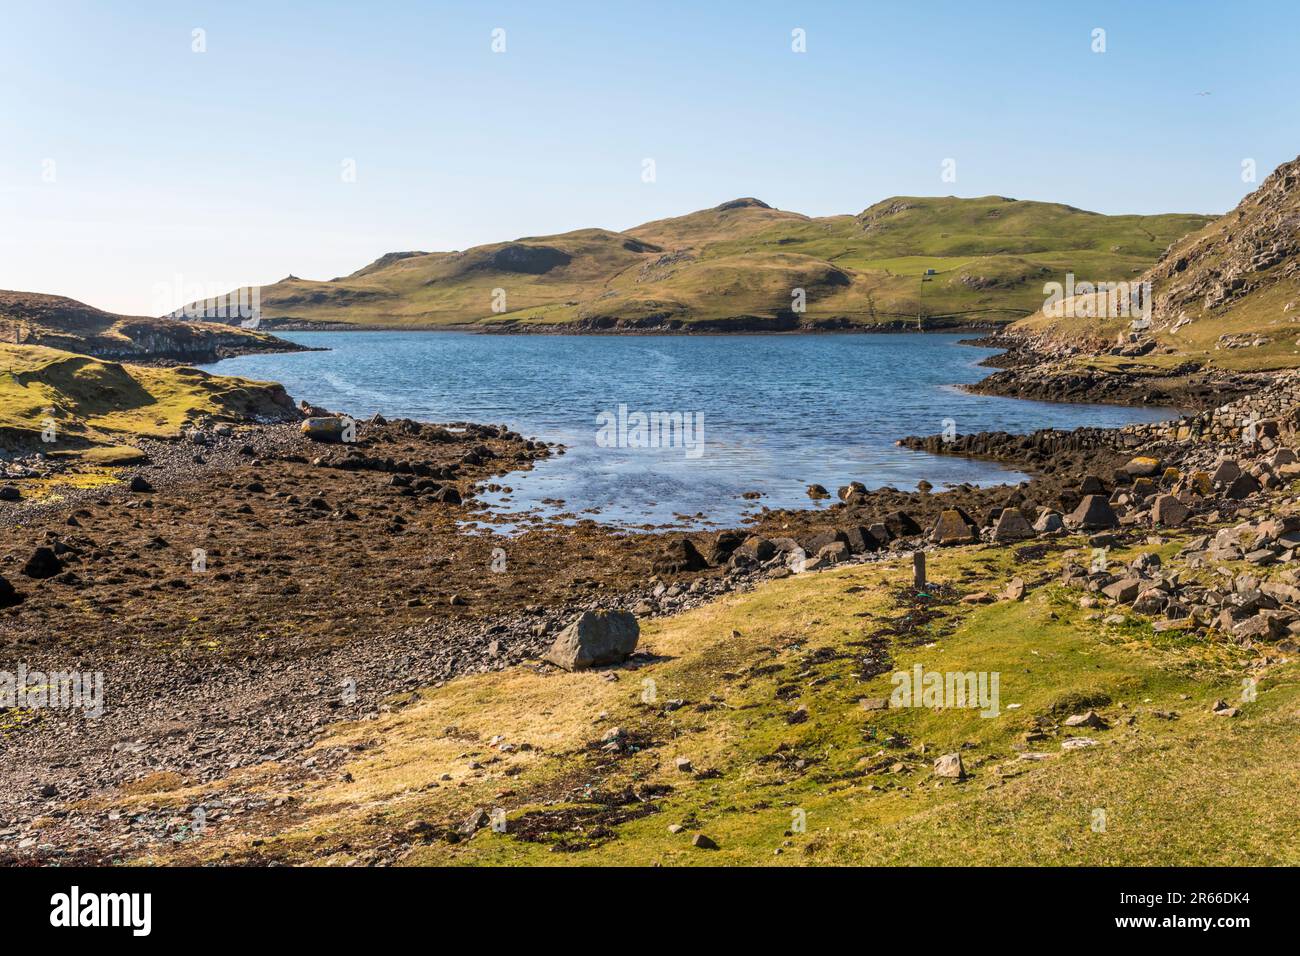 Osserva a ovest da Mavis Grind, lo stretto istmo che unisce Northmavine al resto delle Shetland Mainland. Foto Stock